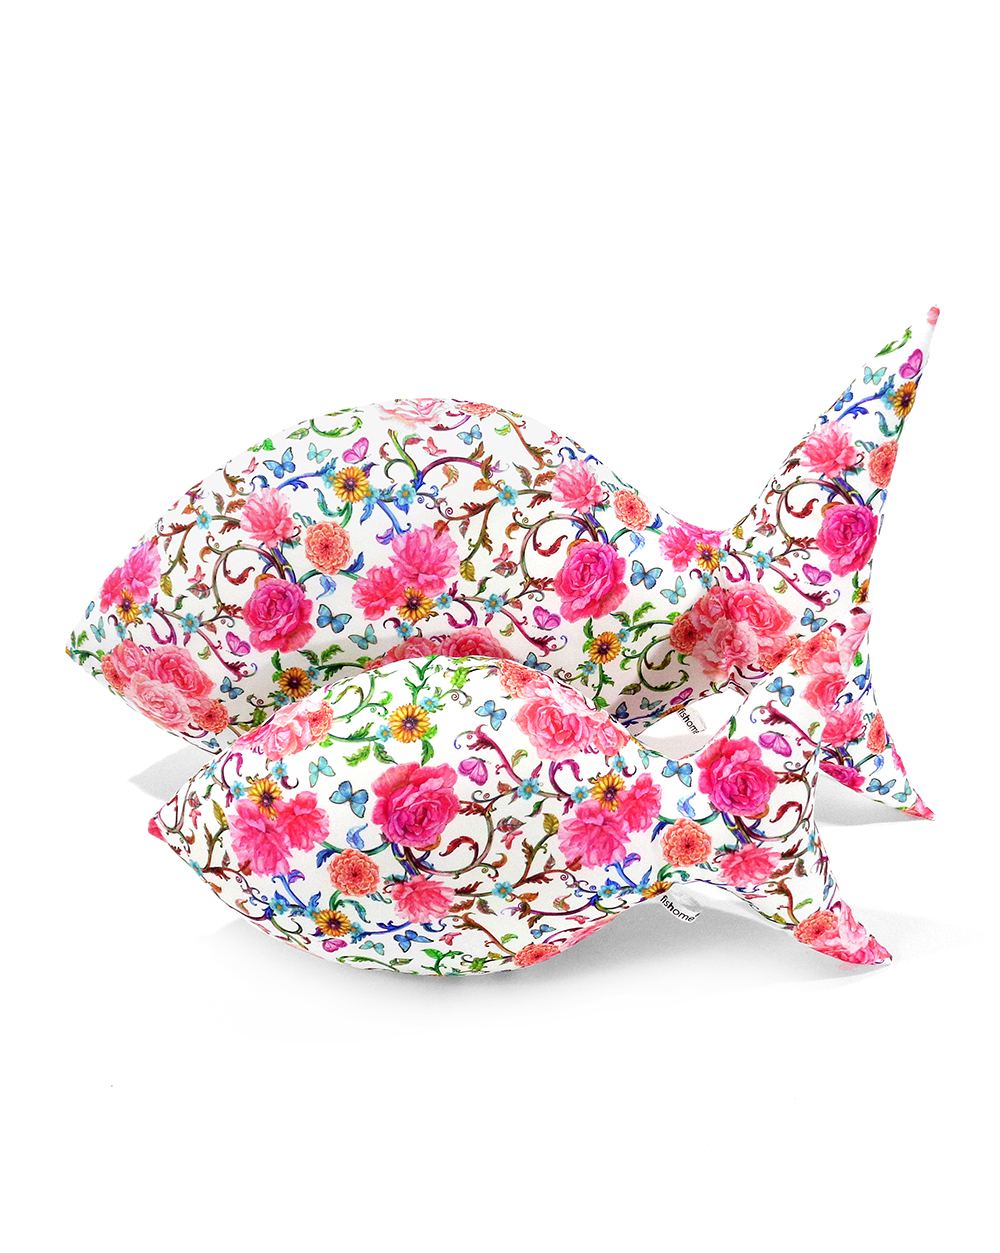 Flower fish pillow